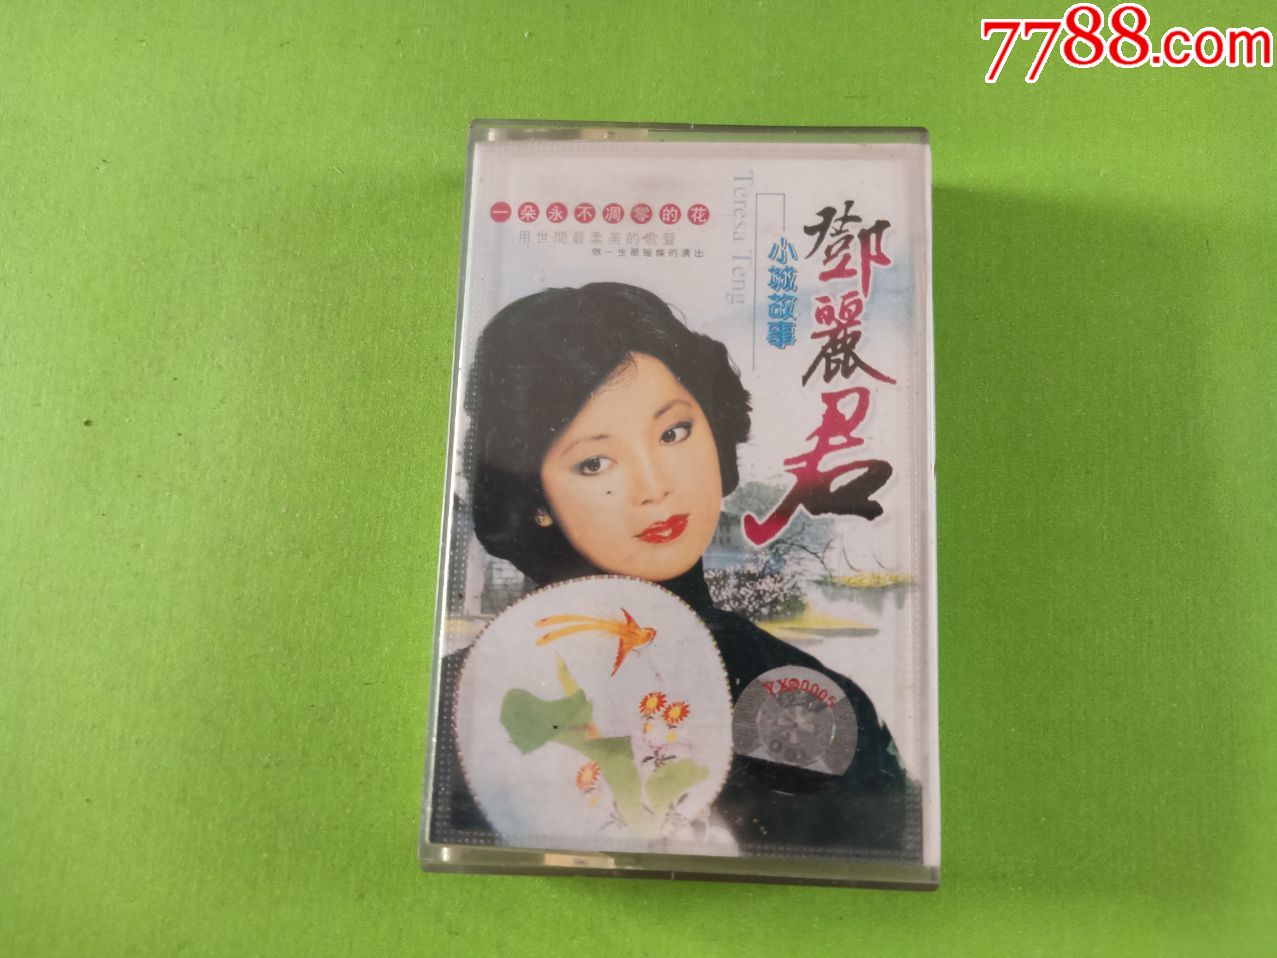 邓丽君小城故事磁带环球唱片供版星文公司独家发行